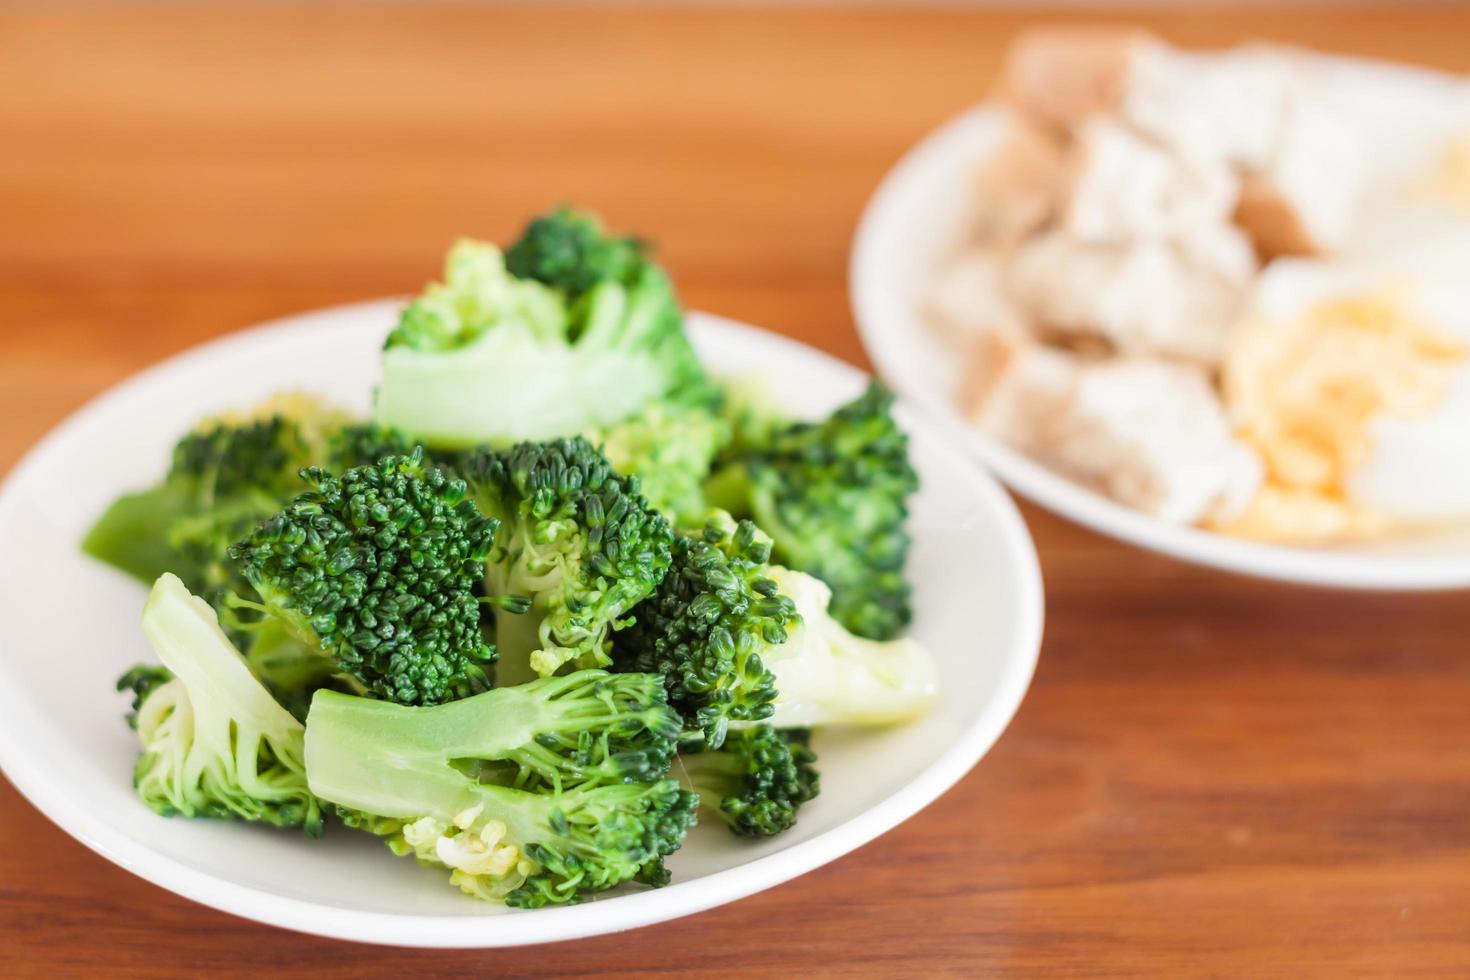 Broccoli on a table photo